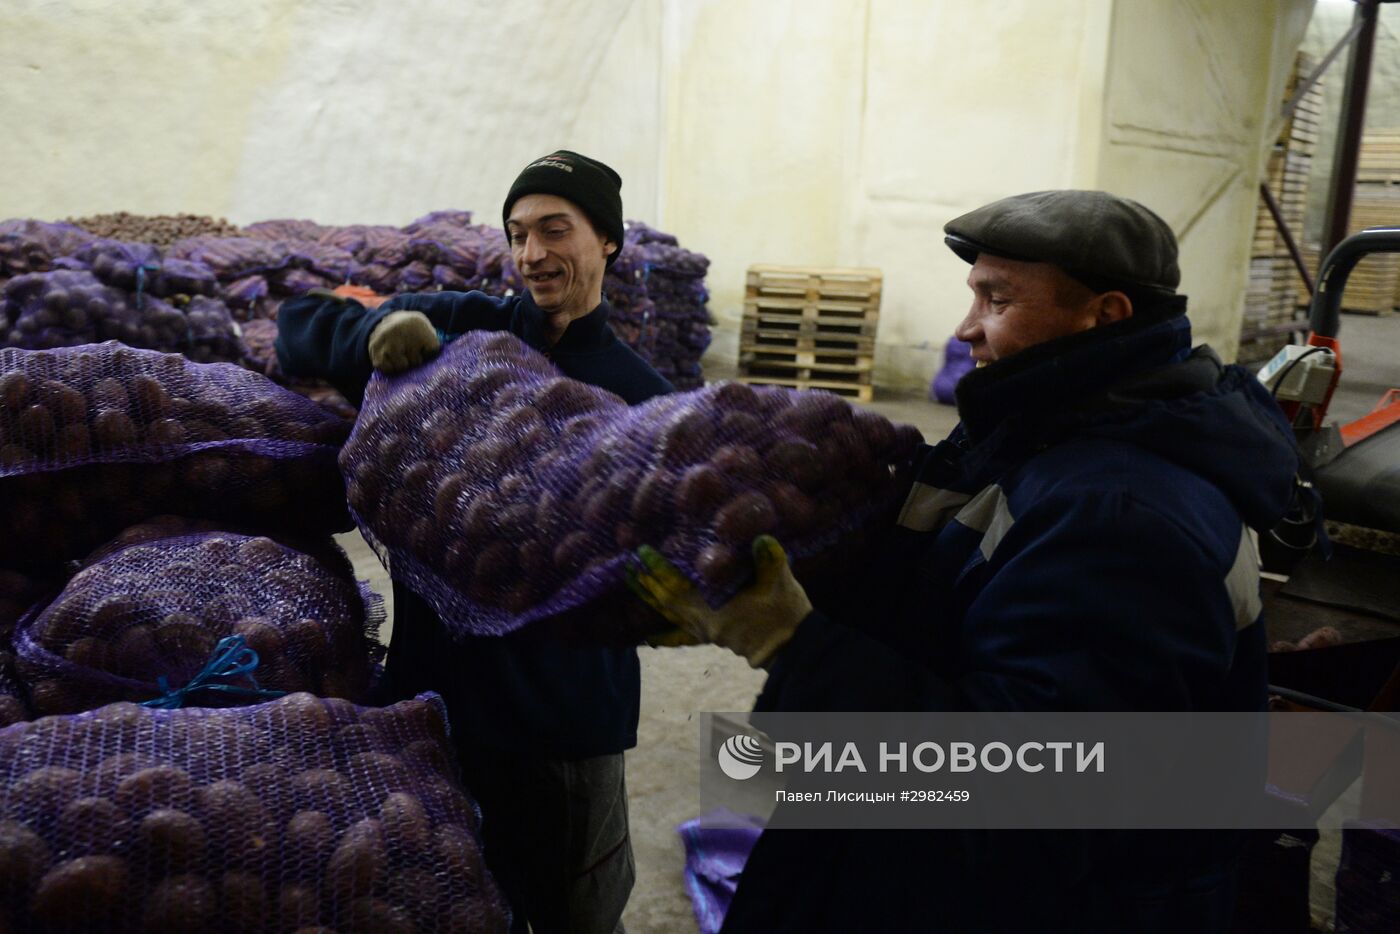 Логистический центр по переработке овощей в Свердловской области